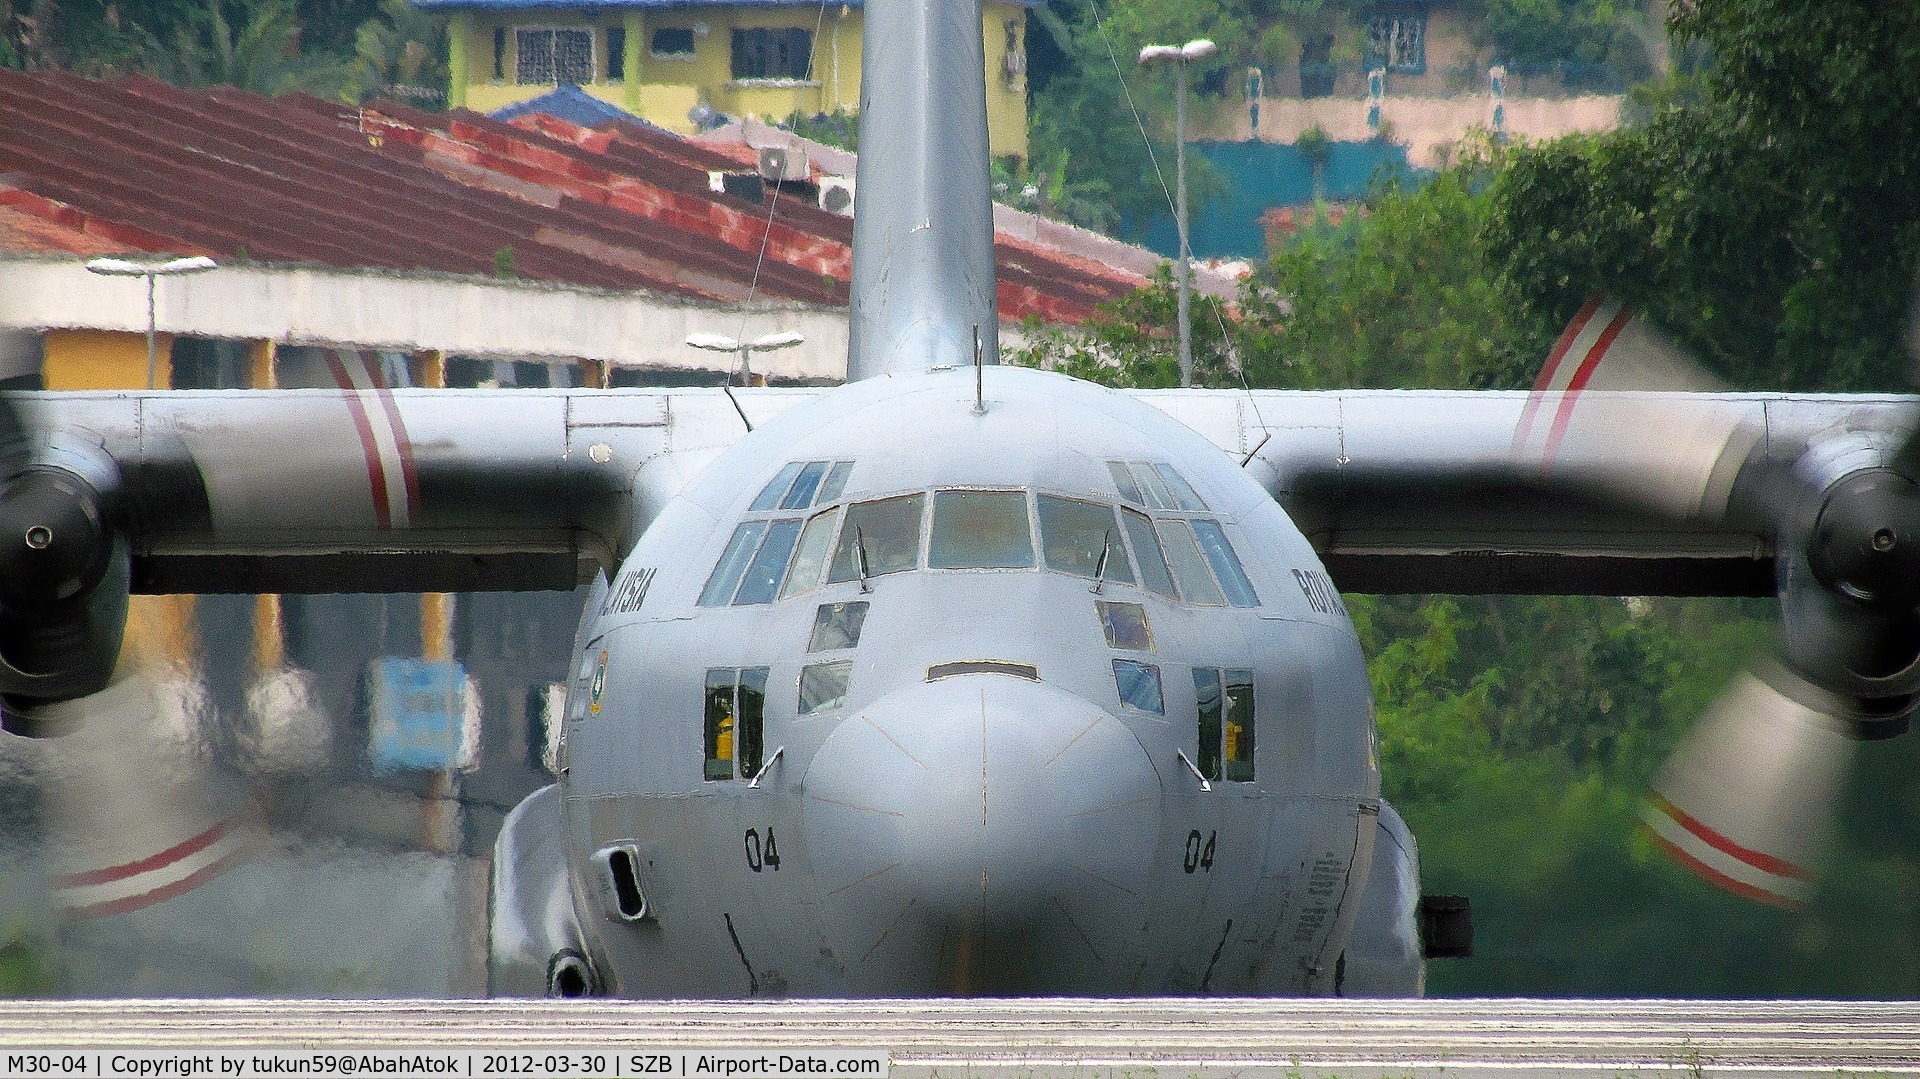 M30-04, 1976 Lockheed C-130H Hercules C/N 382-4685, Royal Malaysian Air Force